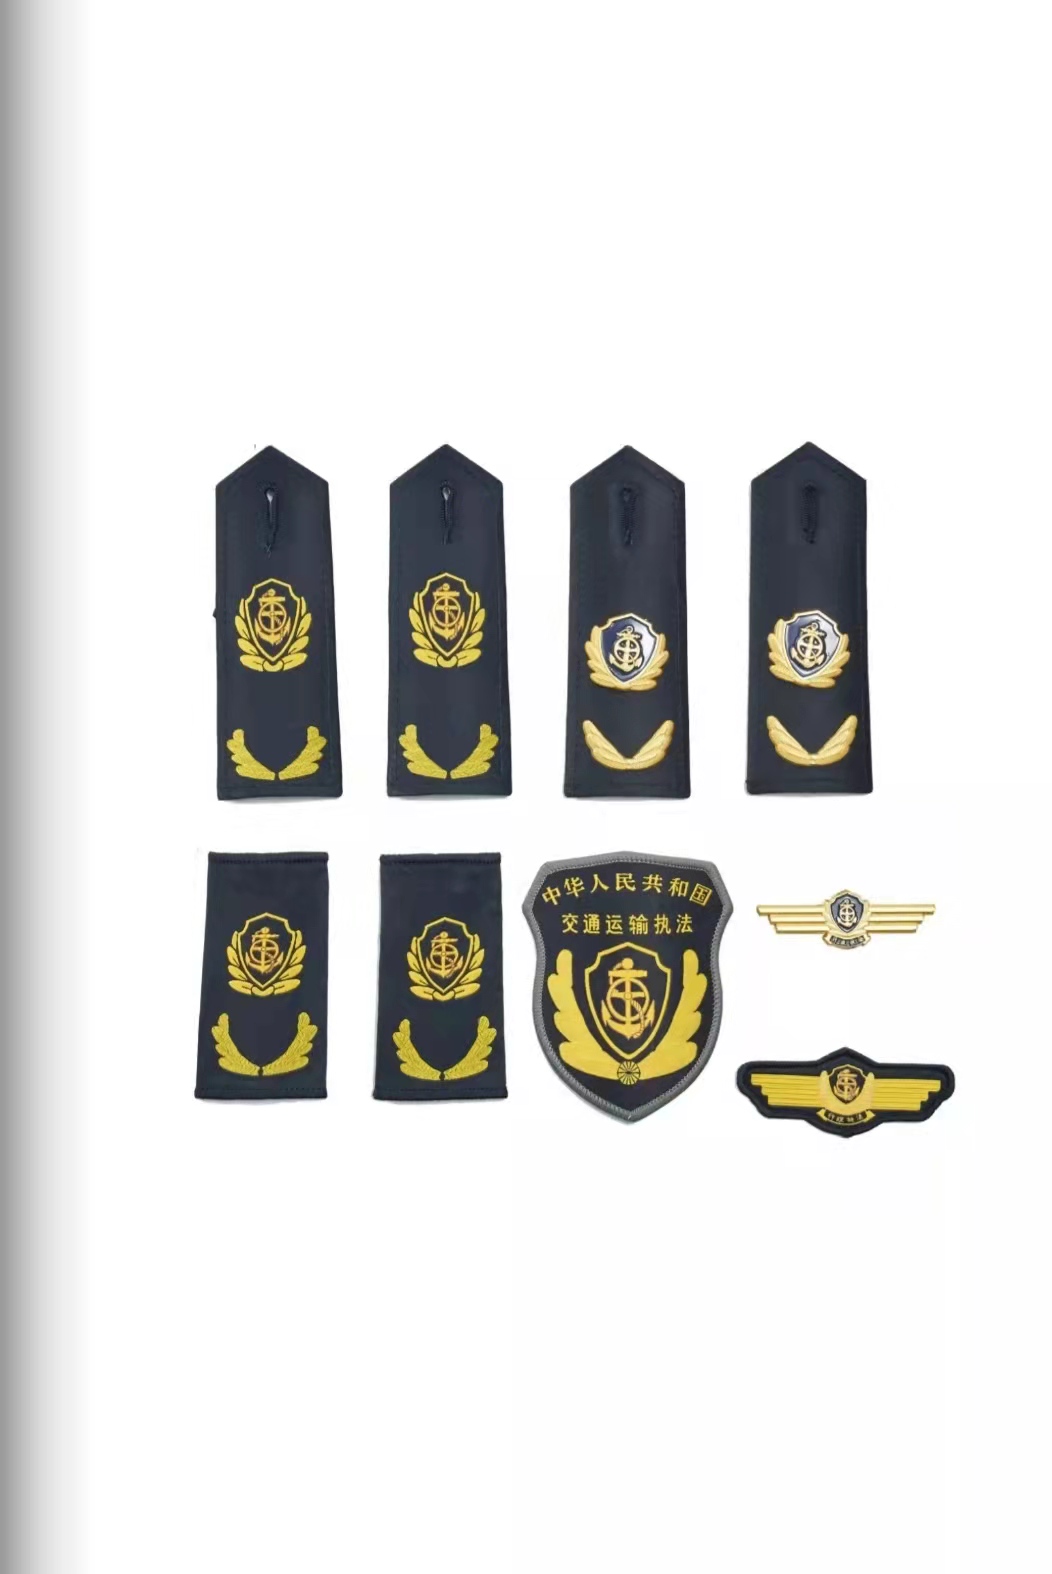 拉萨六部门统一交通运输执法服装标志